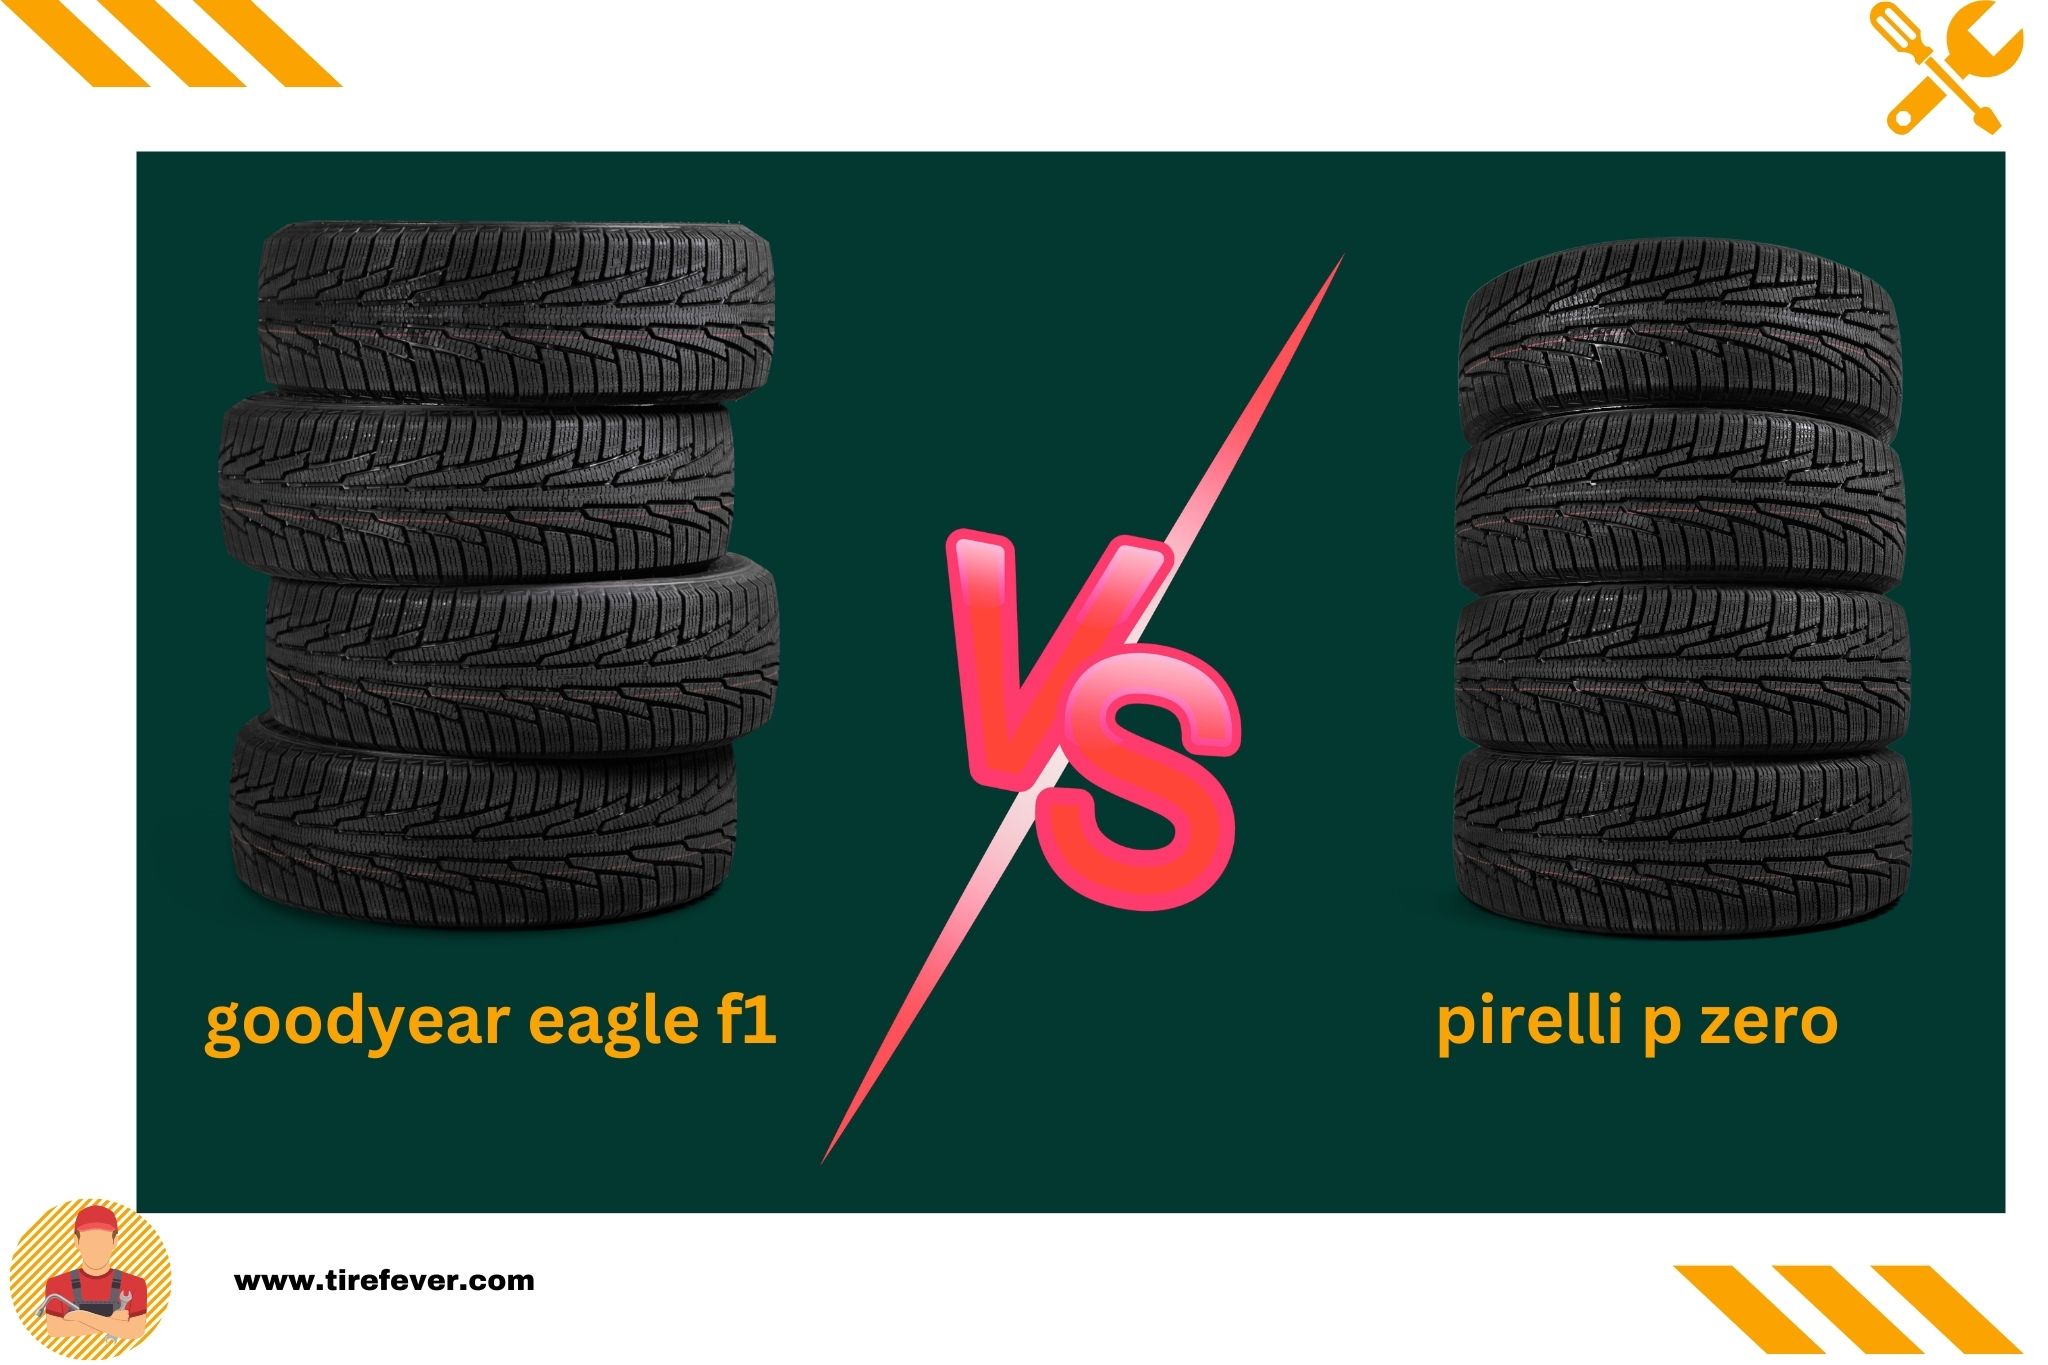 goodyear eagle f1 vs pirelli p zero